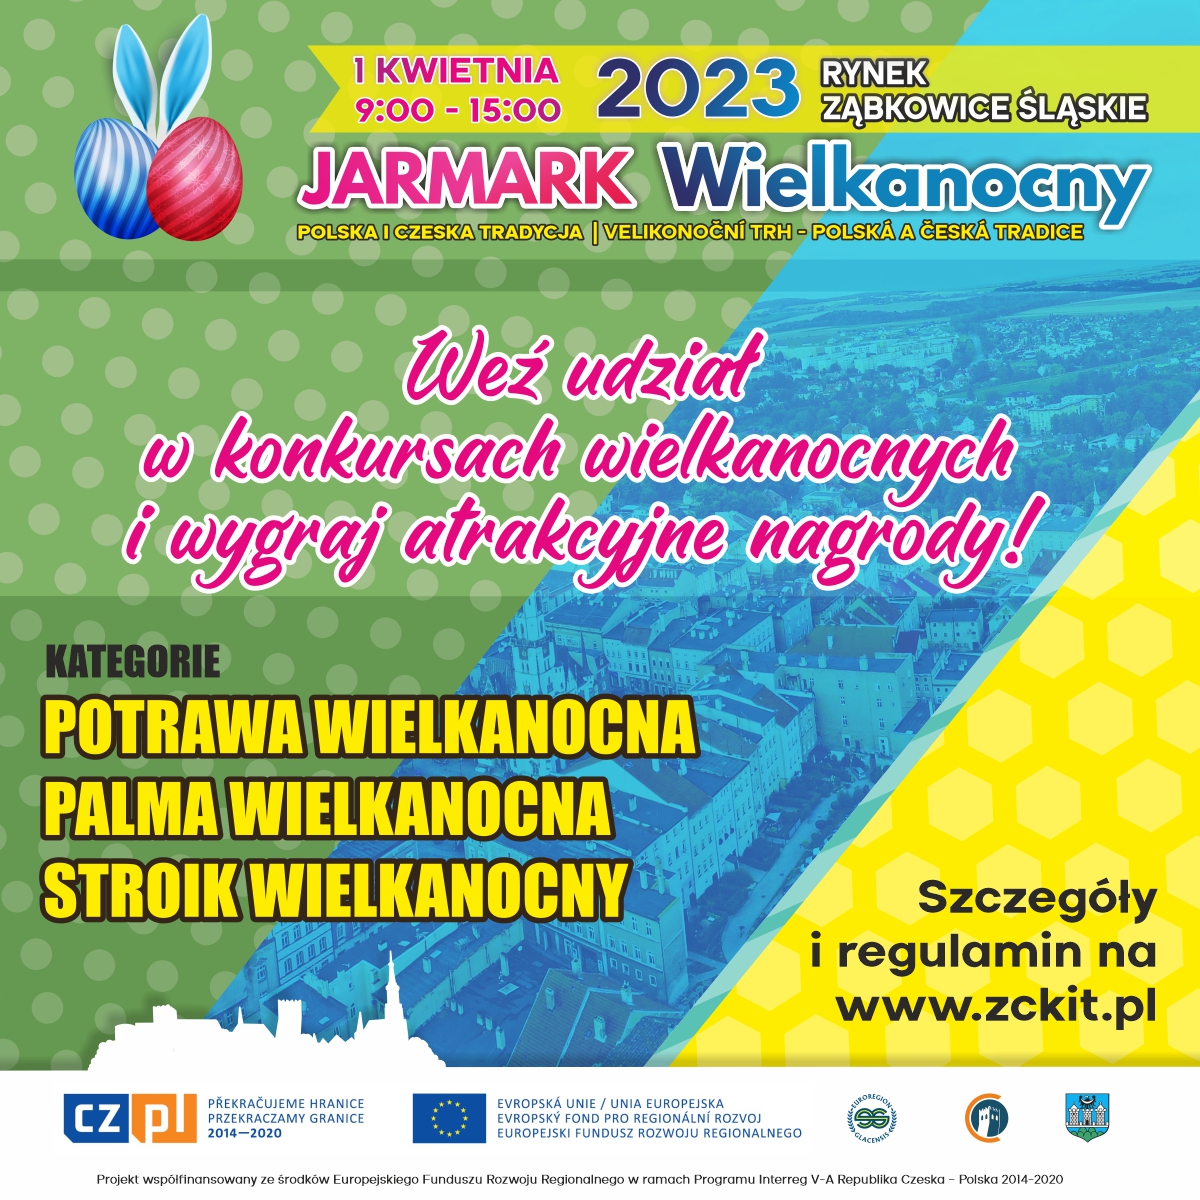 Plakat informujący o Jarmarku Wielkanocnym 1 kwietnia od 9:00 do 15:00 na rynku w Ząbkowicach Śląskich.